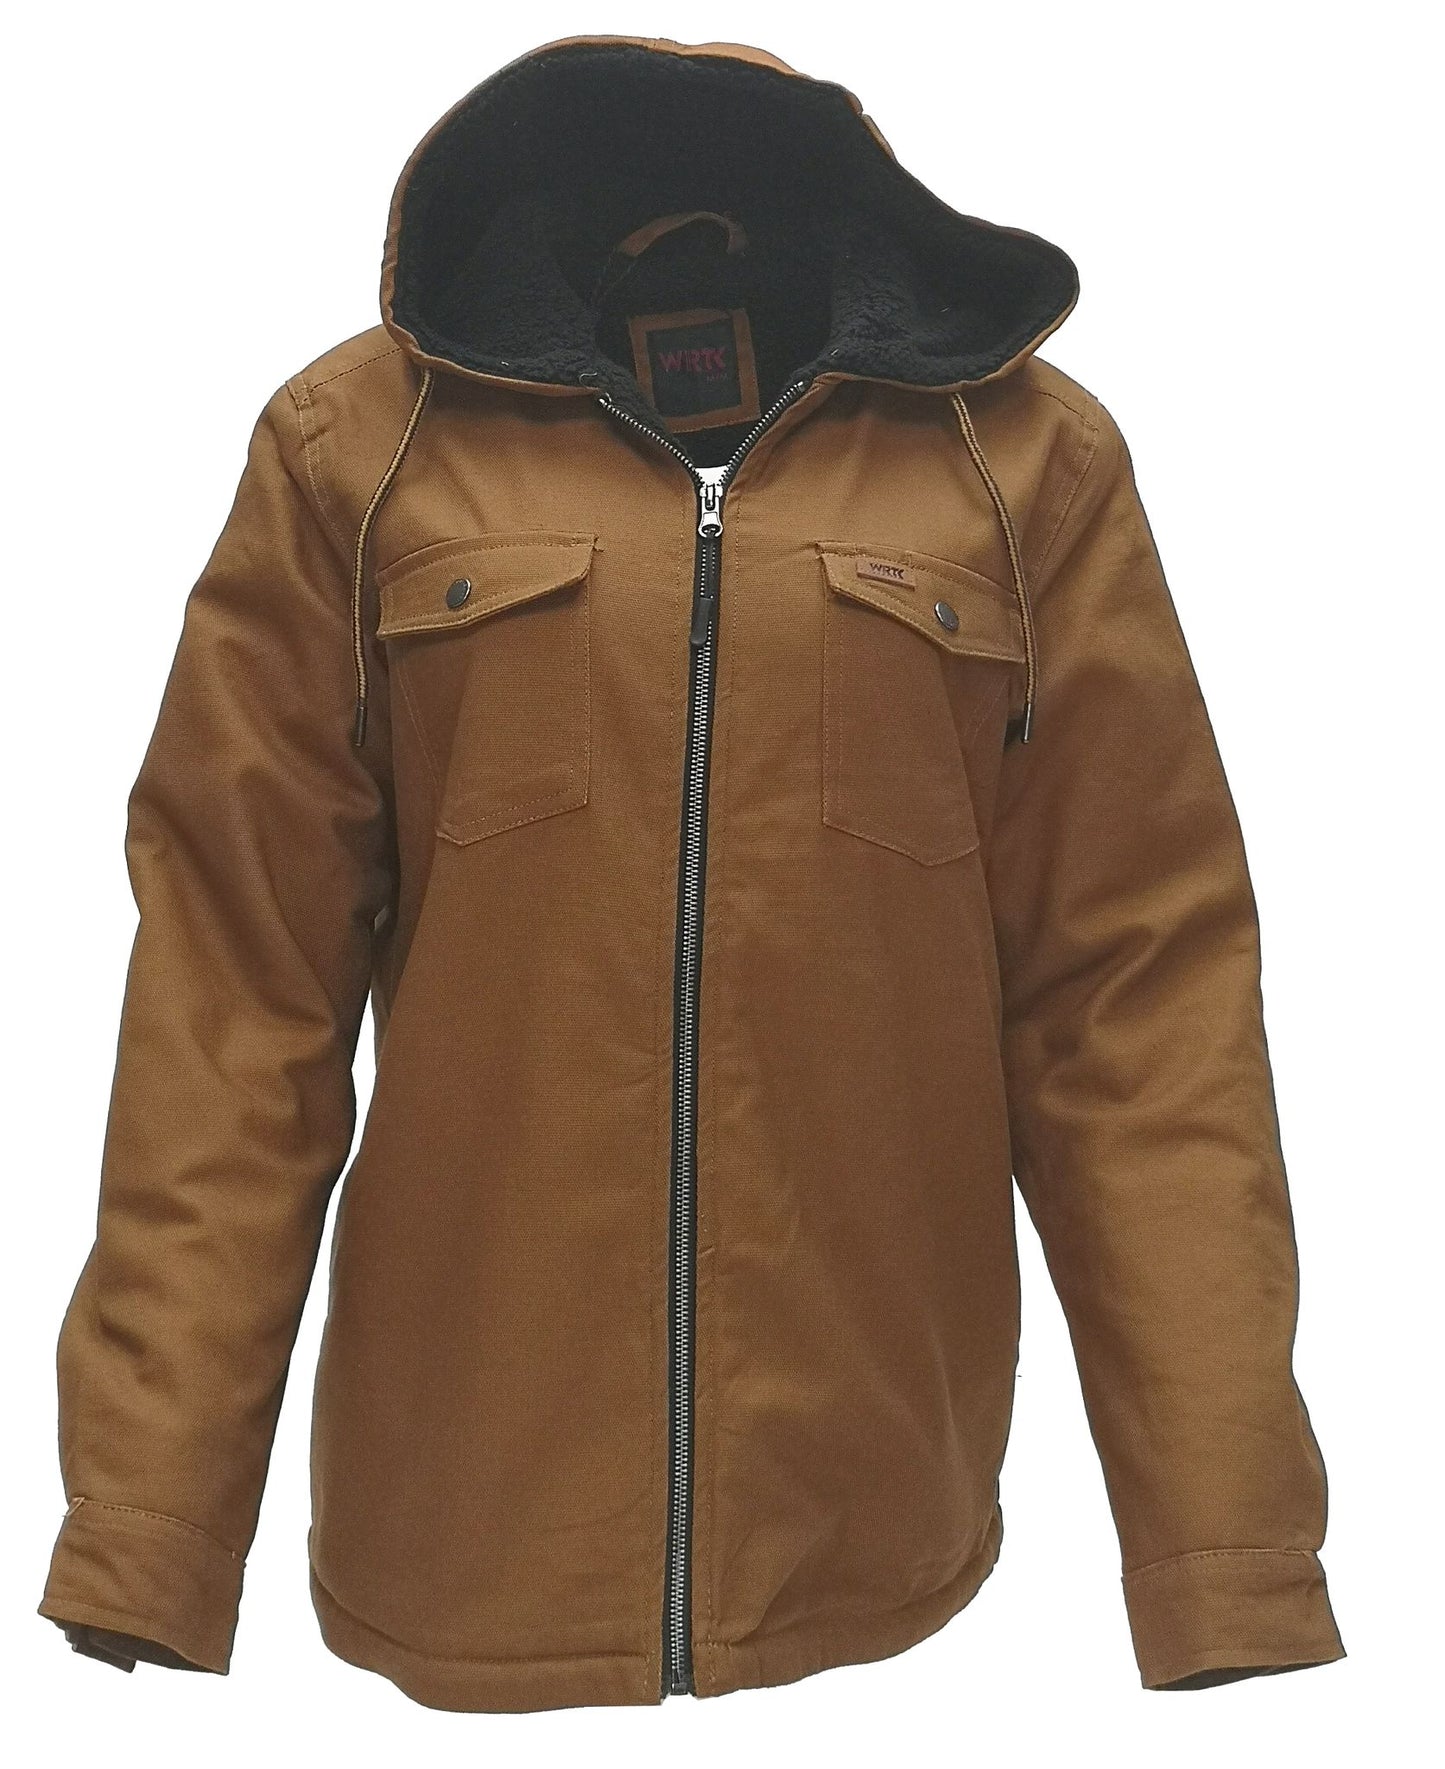 Manteau en canvas extensible doublé sherpa pour femme TK-E60013L